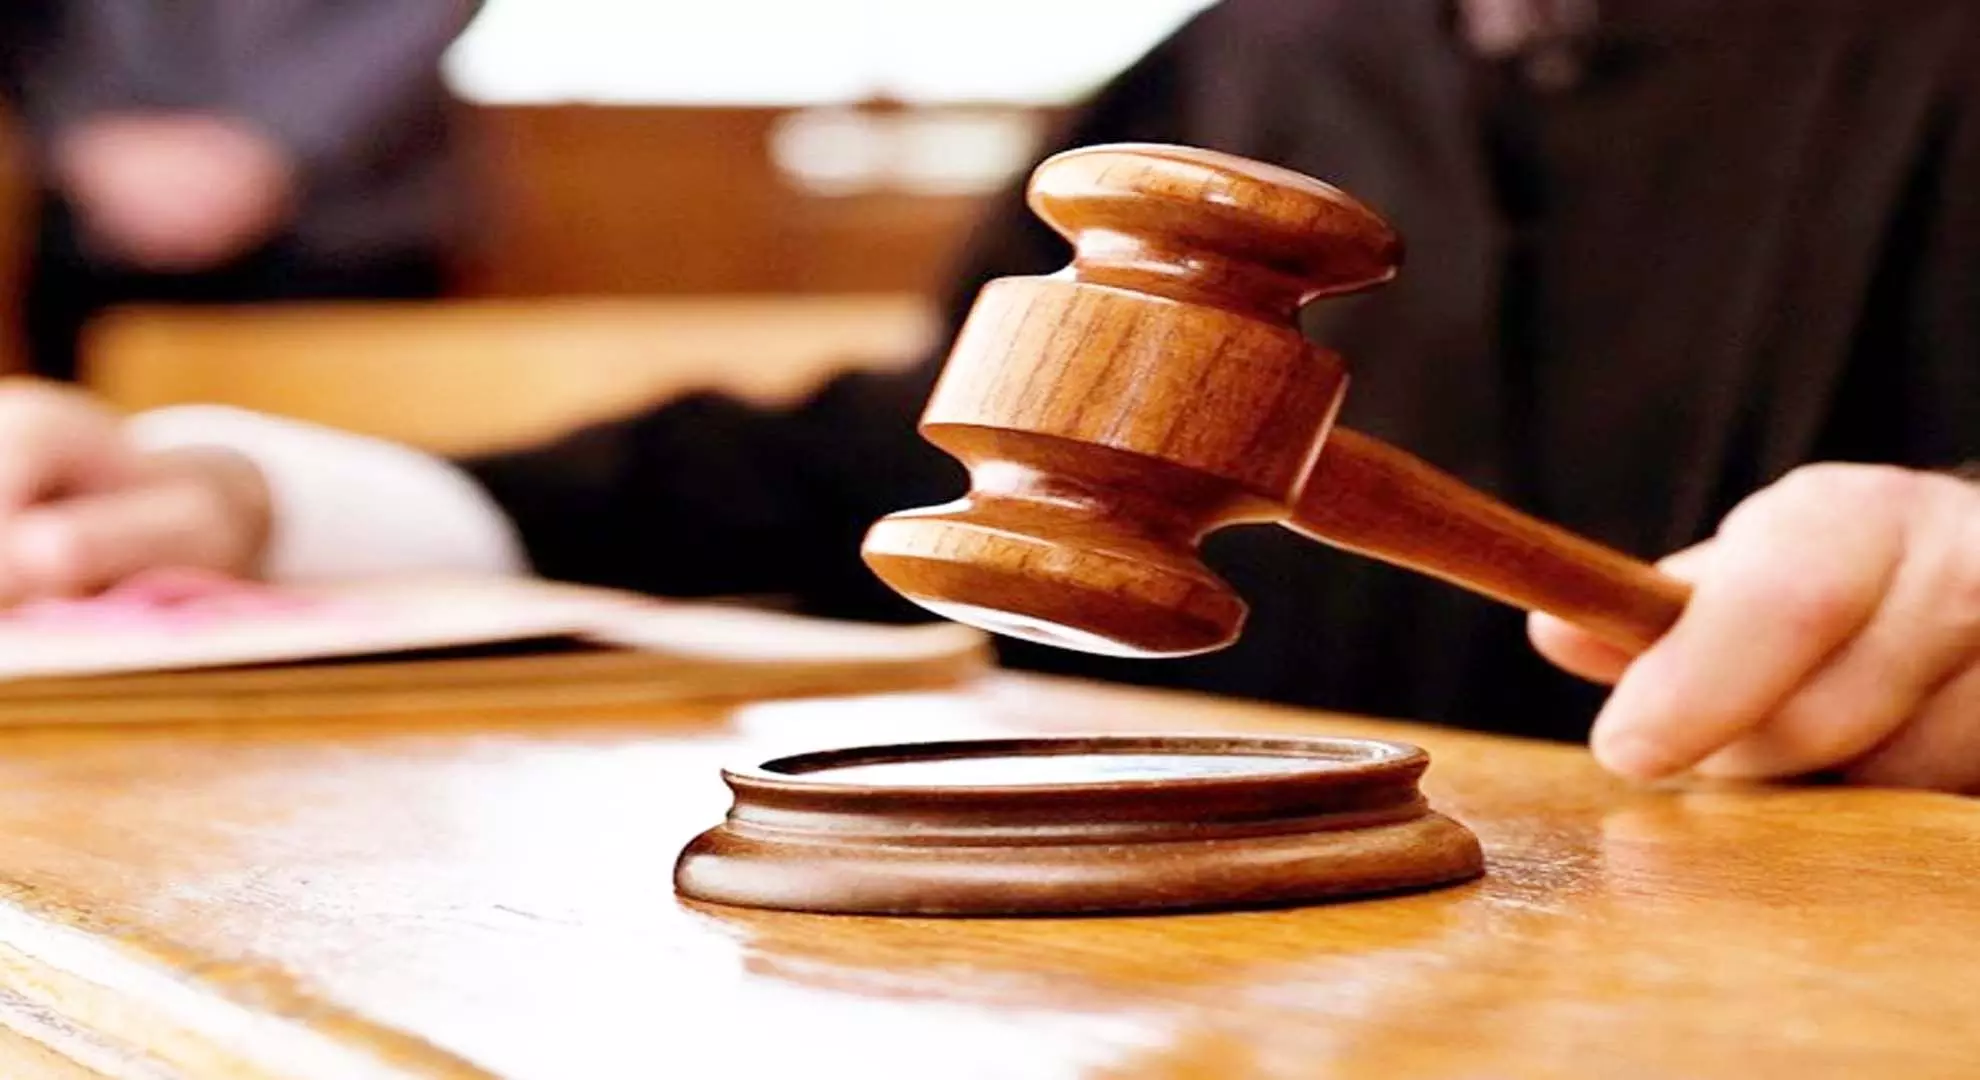 केरल उच्च न्यायालय ने अदालत को उत्तरजीवी को बयान की प्रतियां उपलब्ध कराने का निर्देश दिया